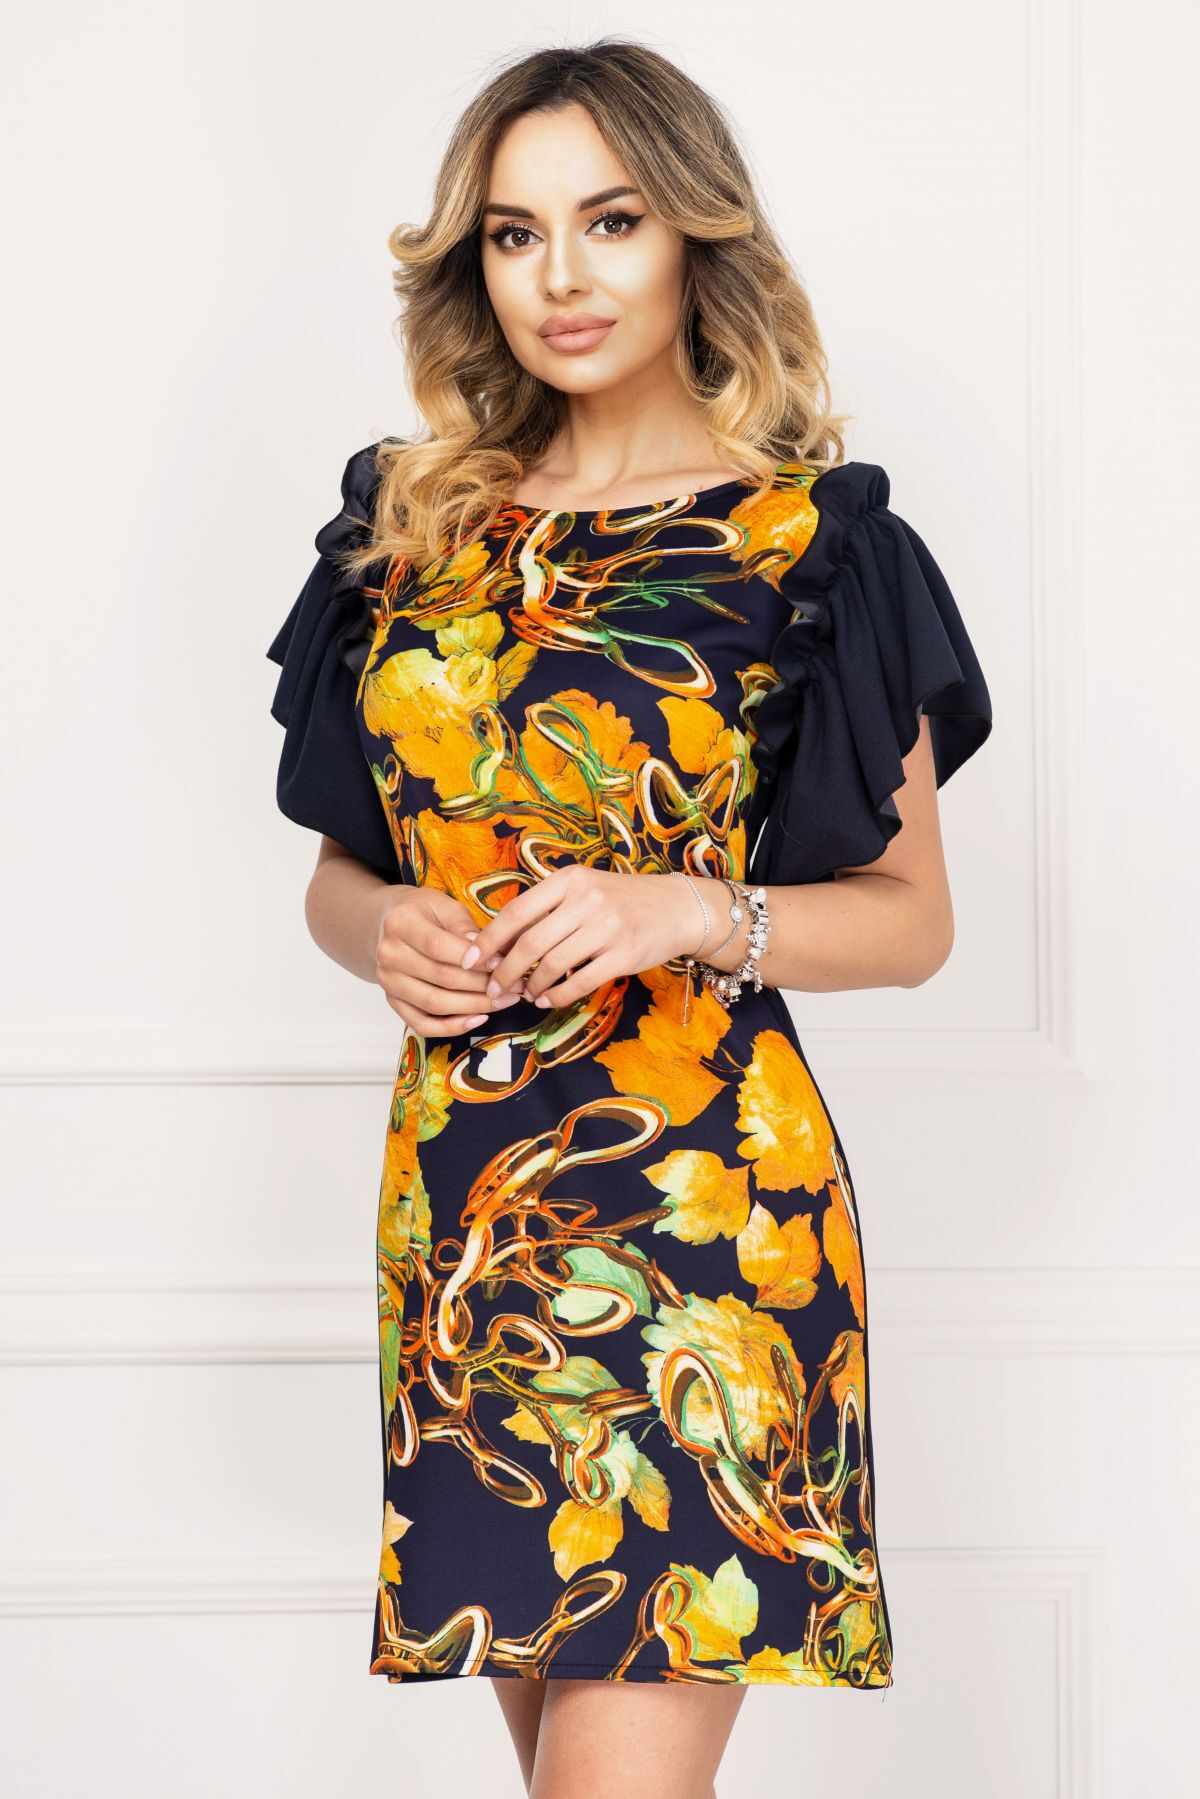 Rochie de zi Alexa bleumarin cu imprimeu floral orange